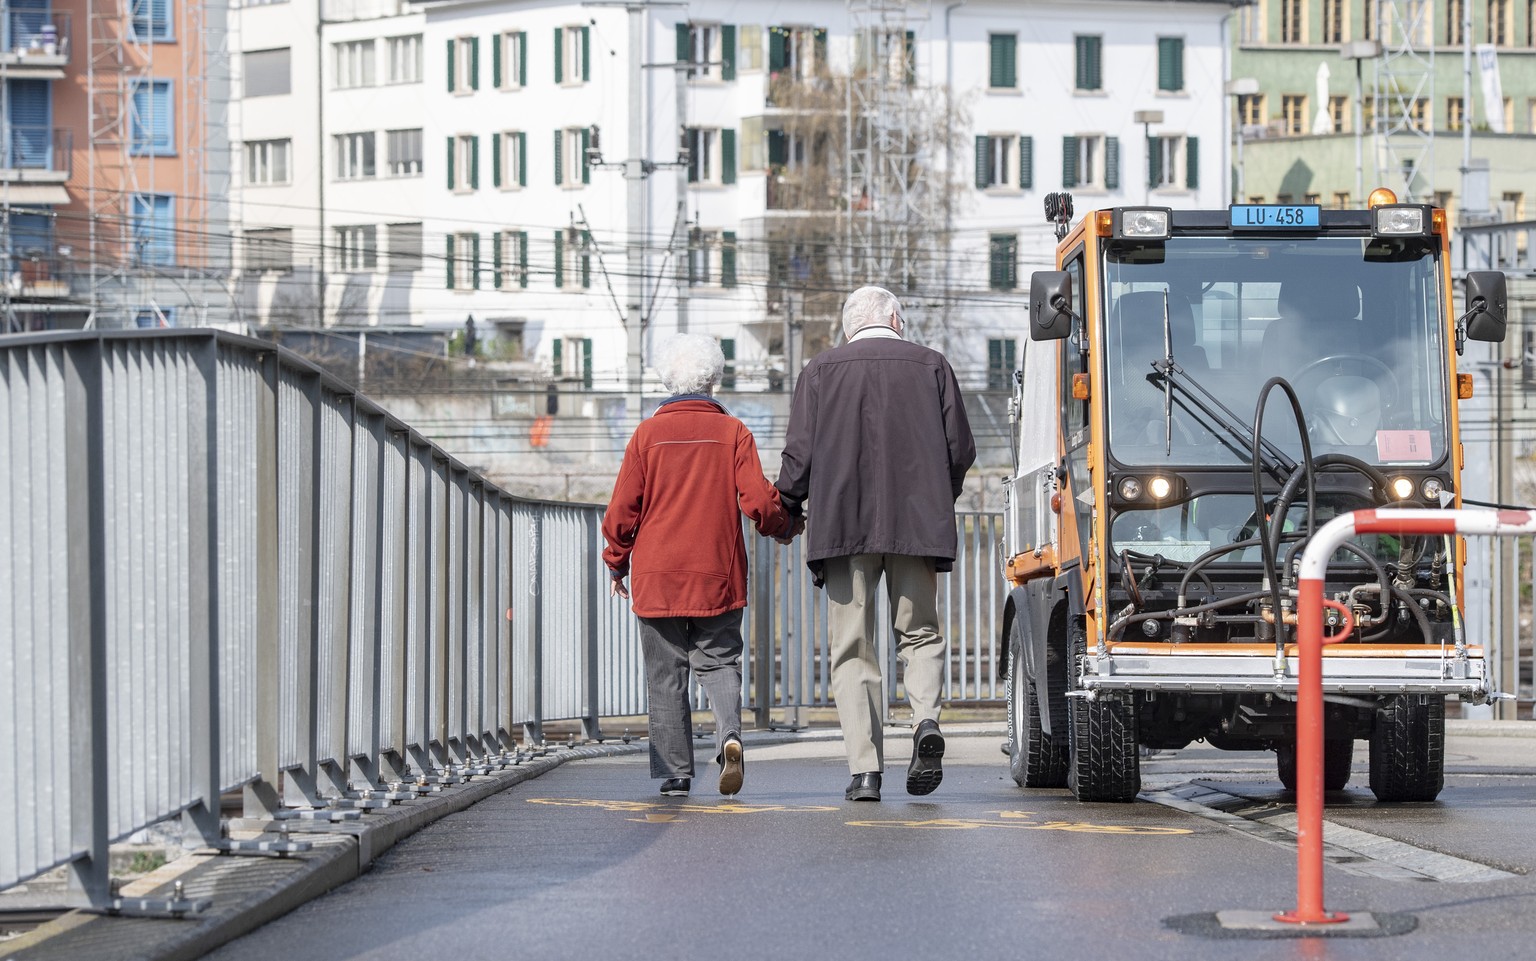 Senioren sind in der Stadt Luzern unterwegs am Freitag, 20. Maerz 2020, waehrend der Coronavirus-Pandemie. (KEYSTONE/Urs Flueeler)